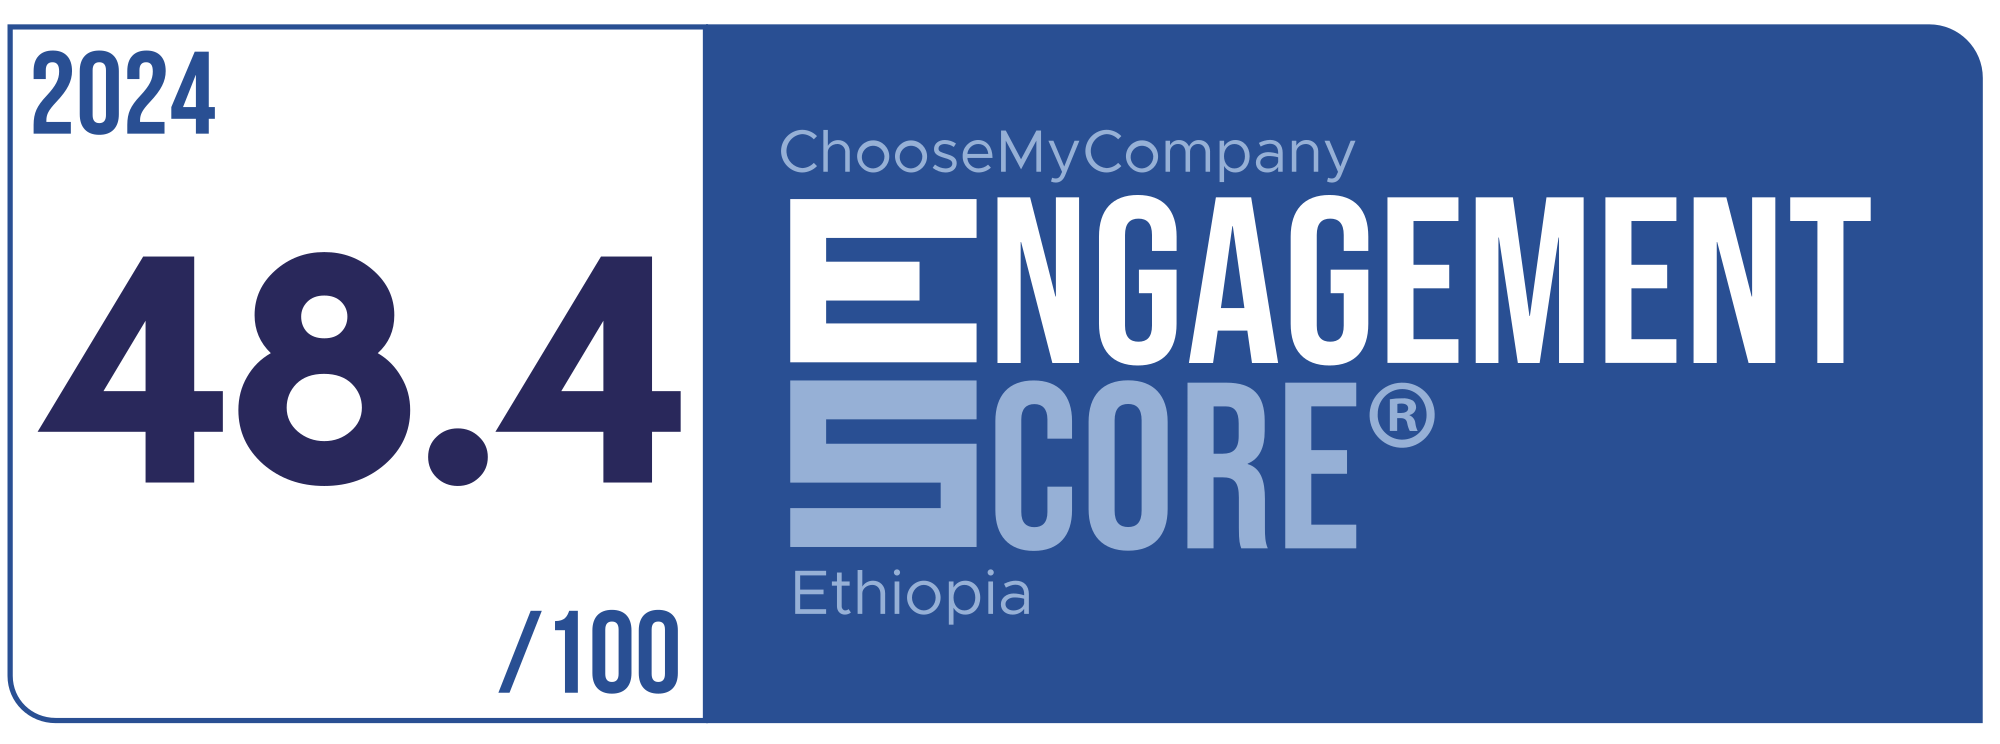 Label Engagement Score 2024 Ethiopia